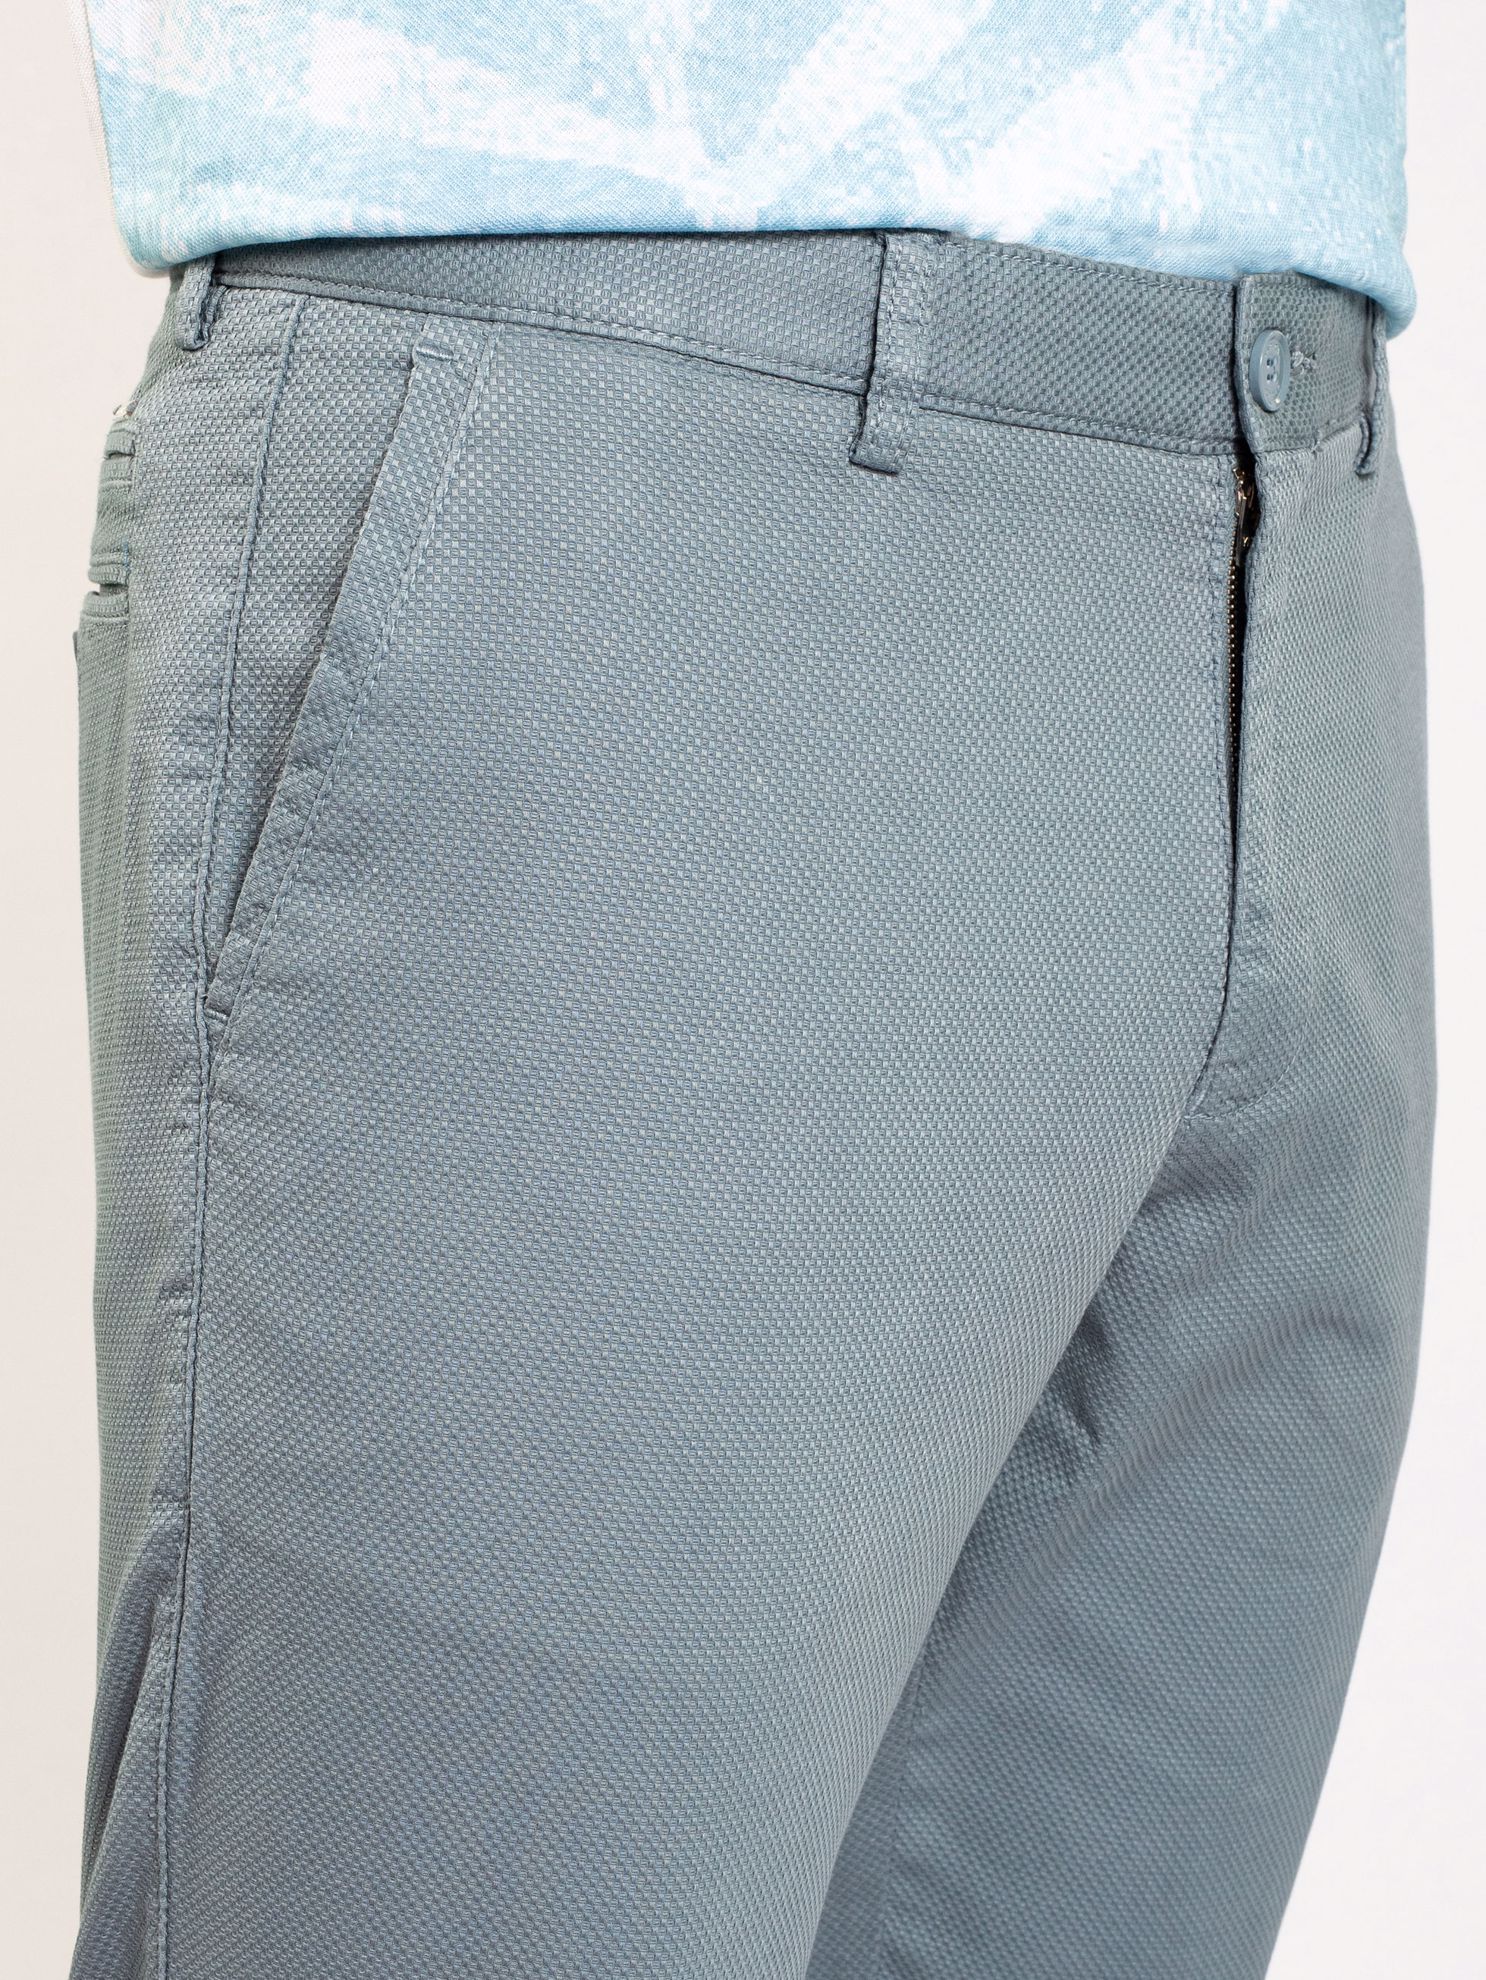 Karaca Erkek 6 Drop Pantolon-Mavi. ürün görseli